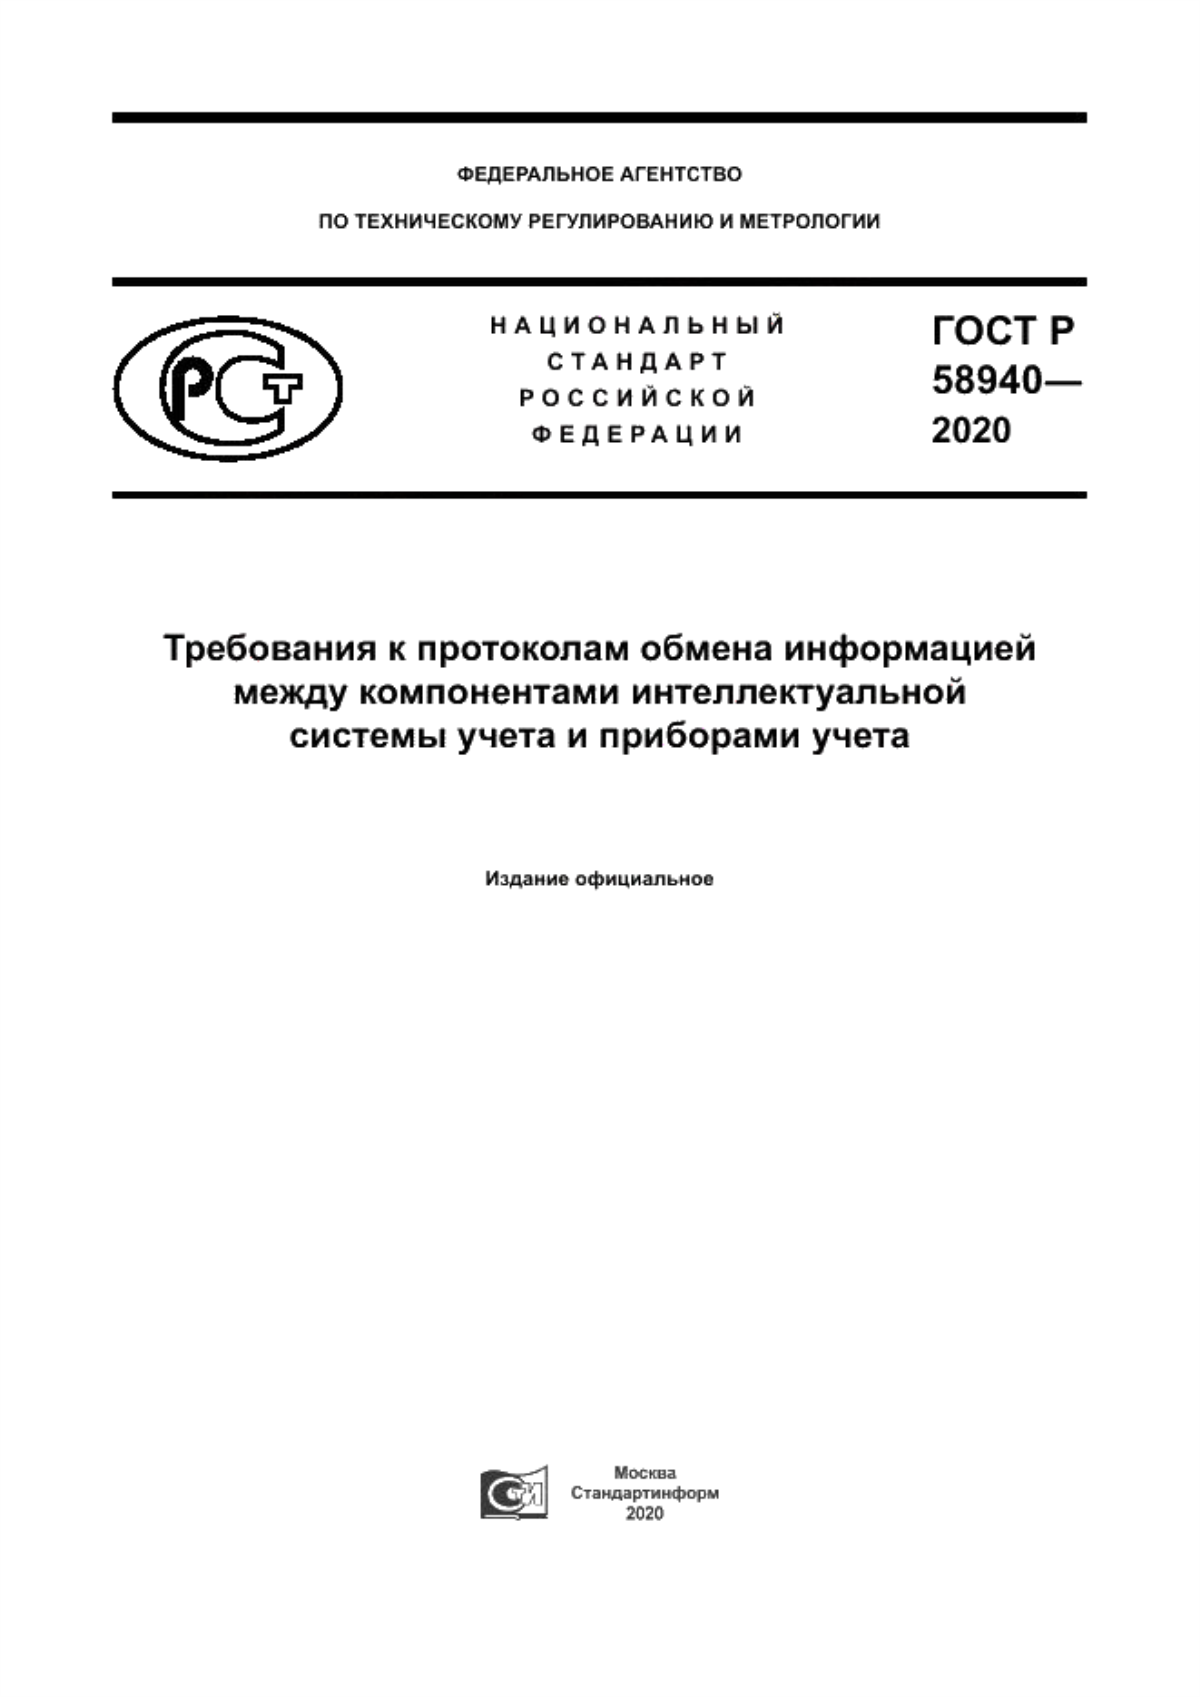 ГОСТ Р 58940-2020 Требования к протоколам обмена информацией между компонентами интеллектуальной системы учета и приборами учета